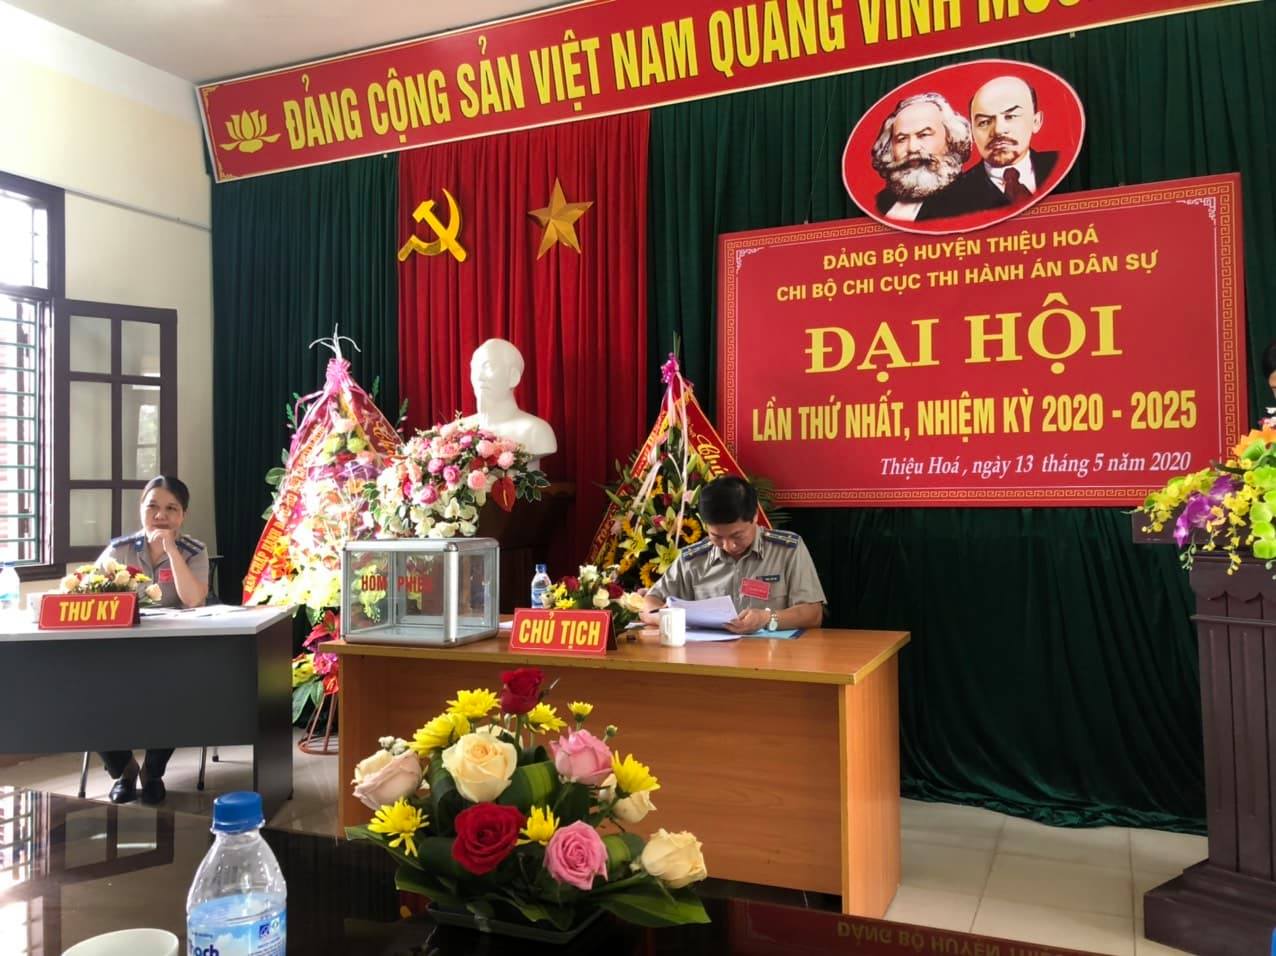 Chi bộ Chi cục THADS huyện Thiệu Hóa tổ chức Đại hội Chi bộ, nhiệm kỳ 2020-2025